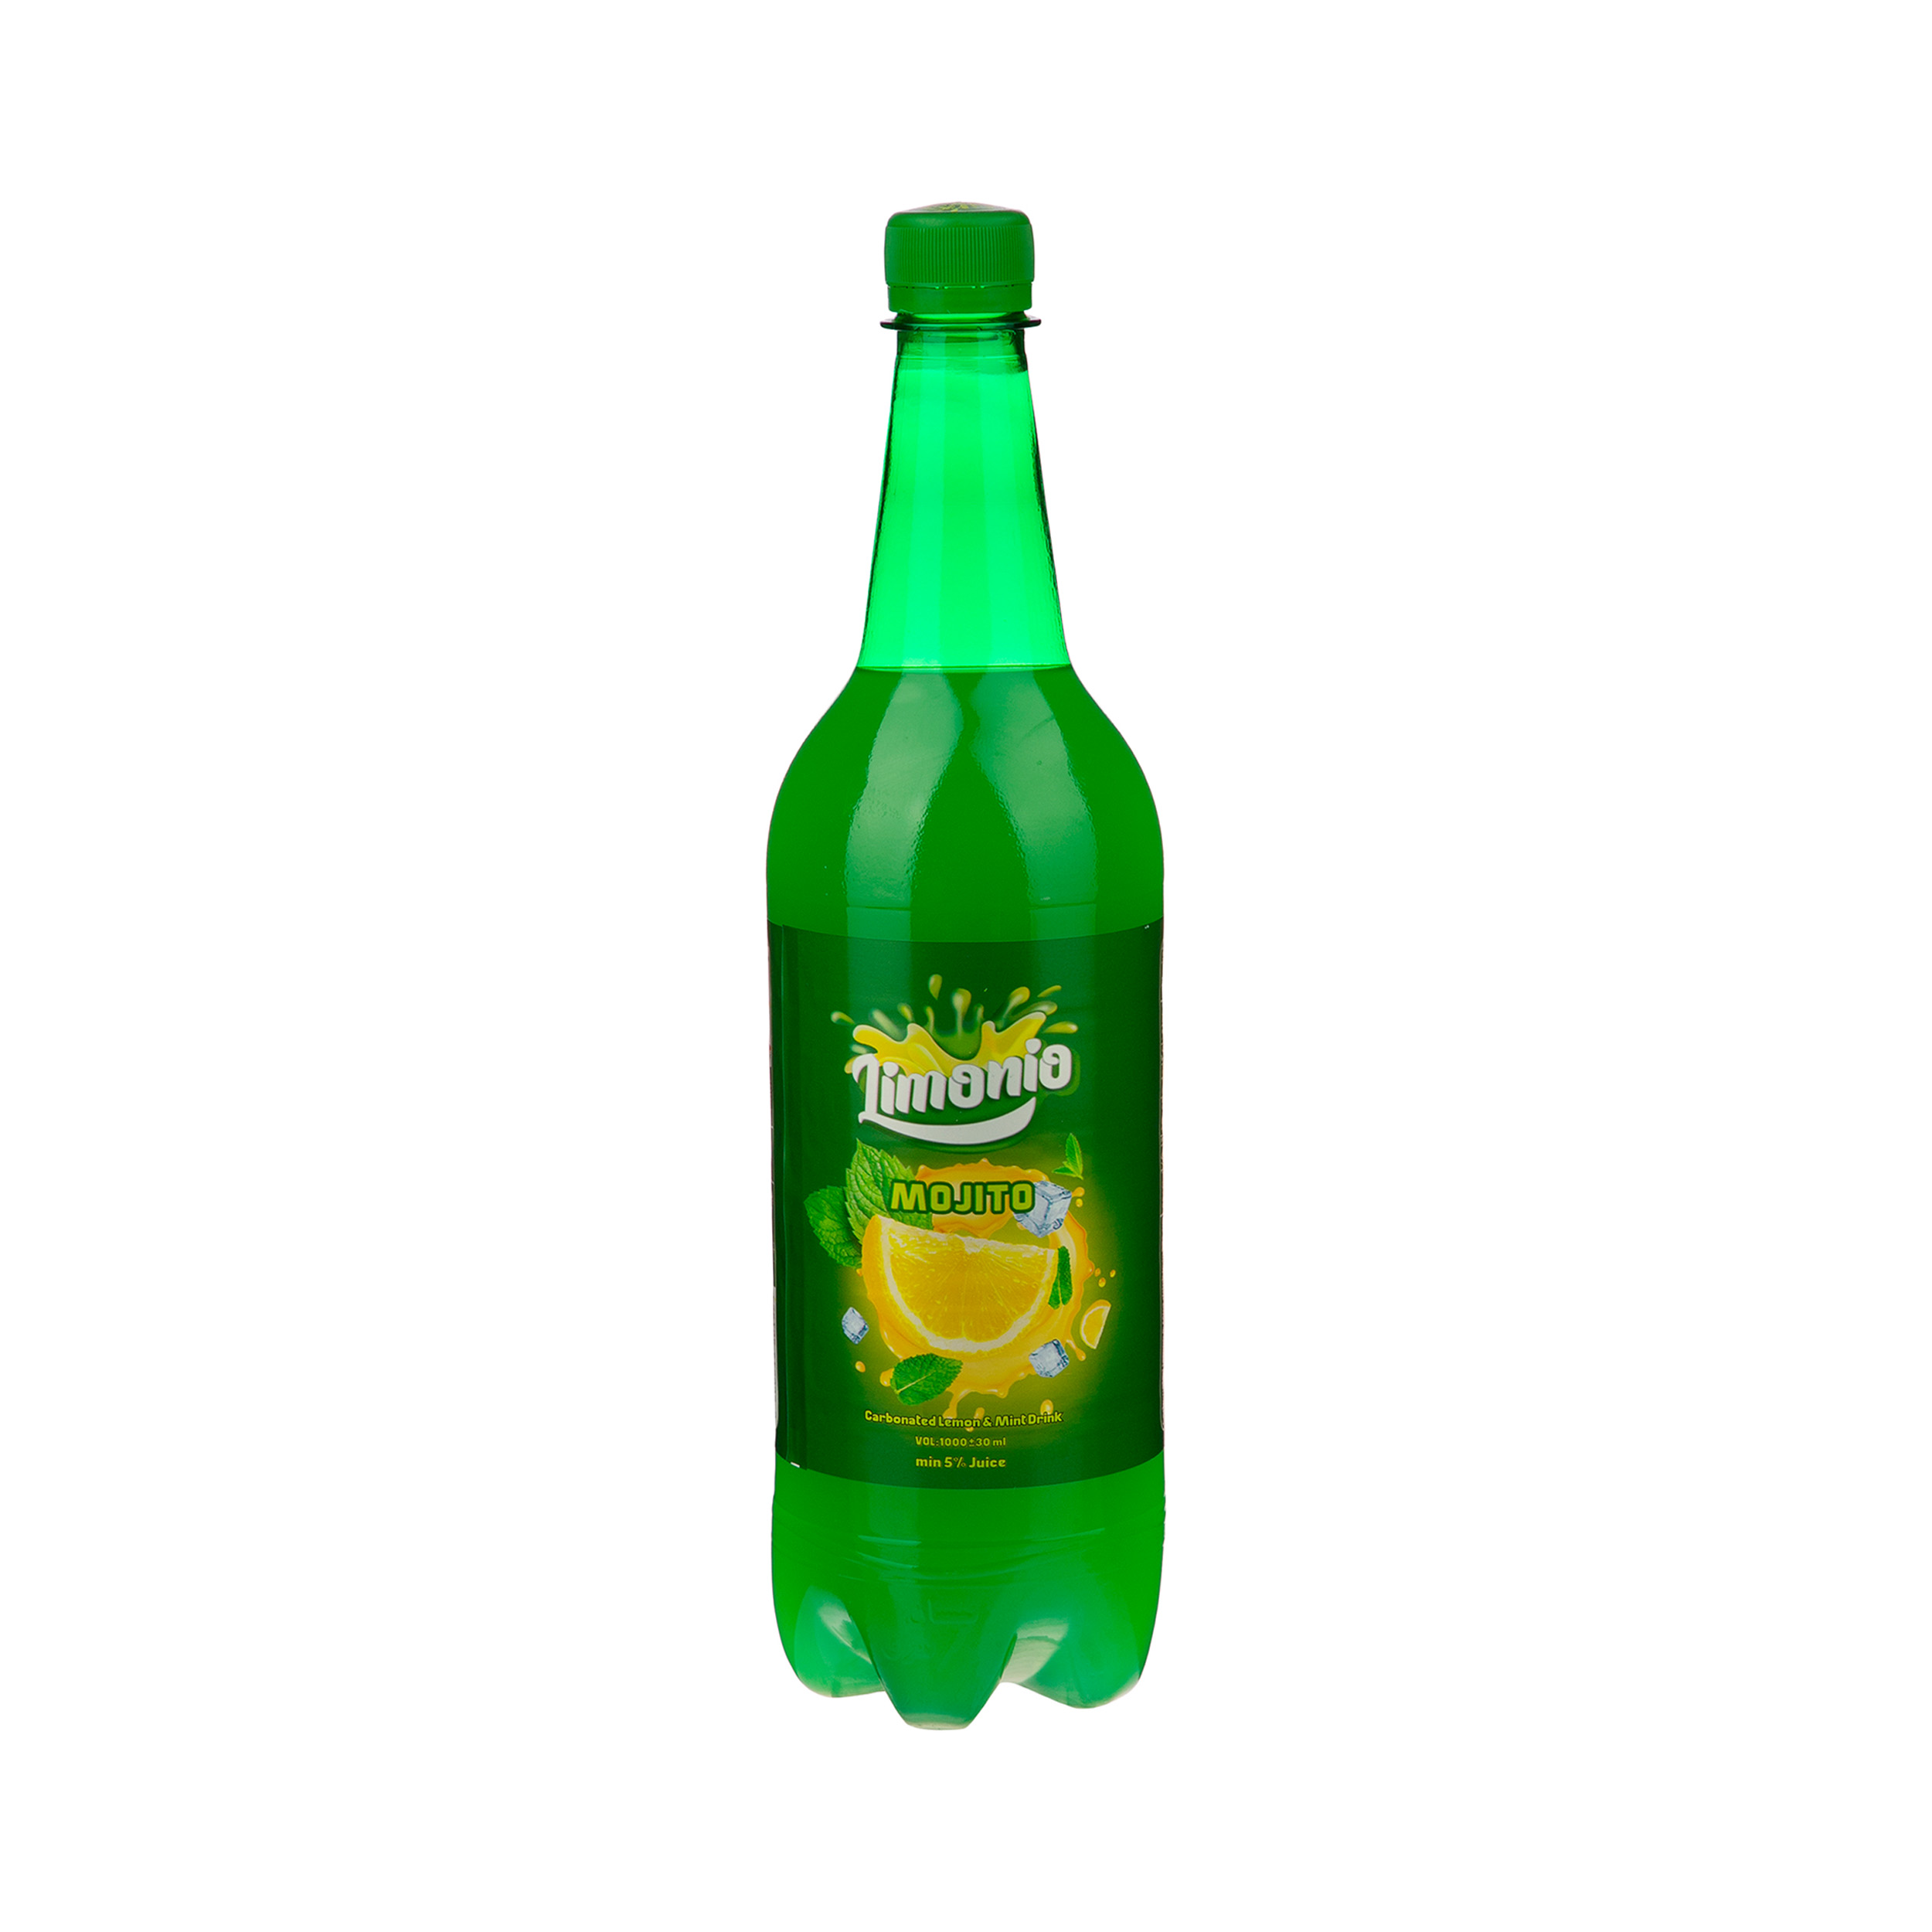 نوشیدنی موهیتو گاز دار لیمونیو - 1 لیتر